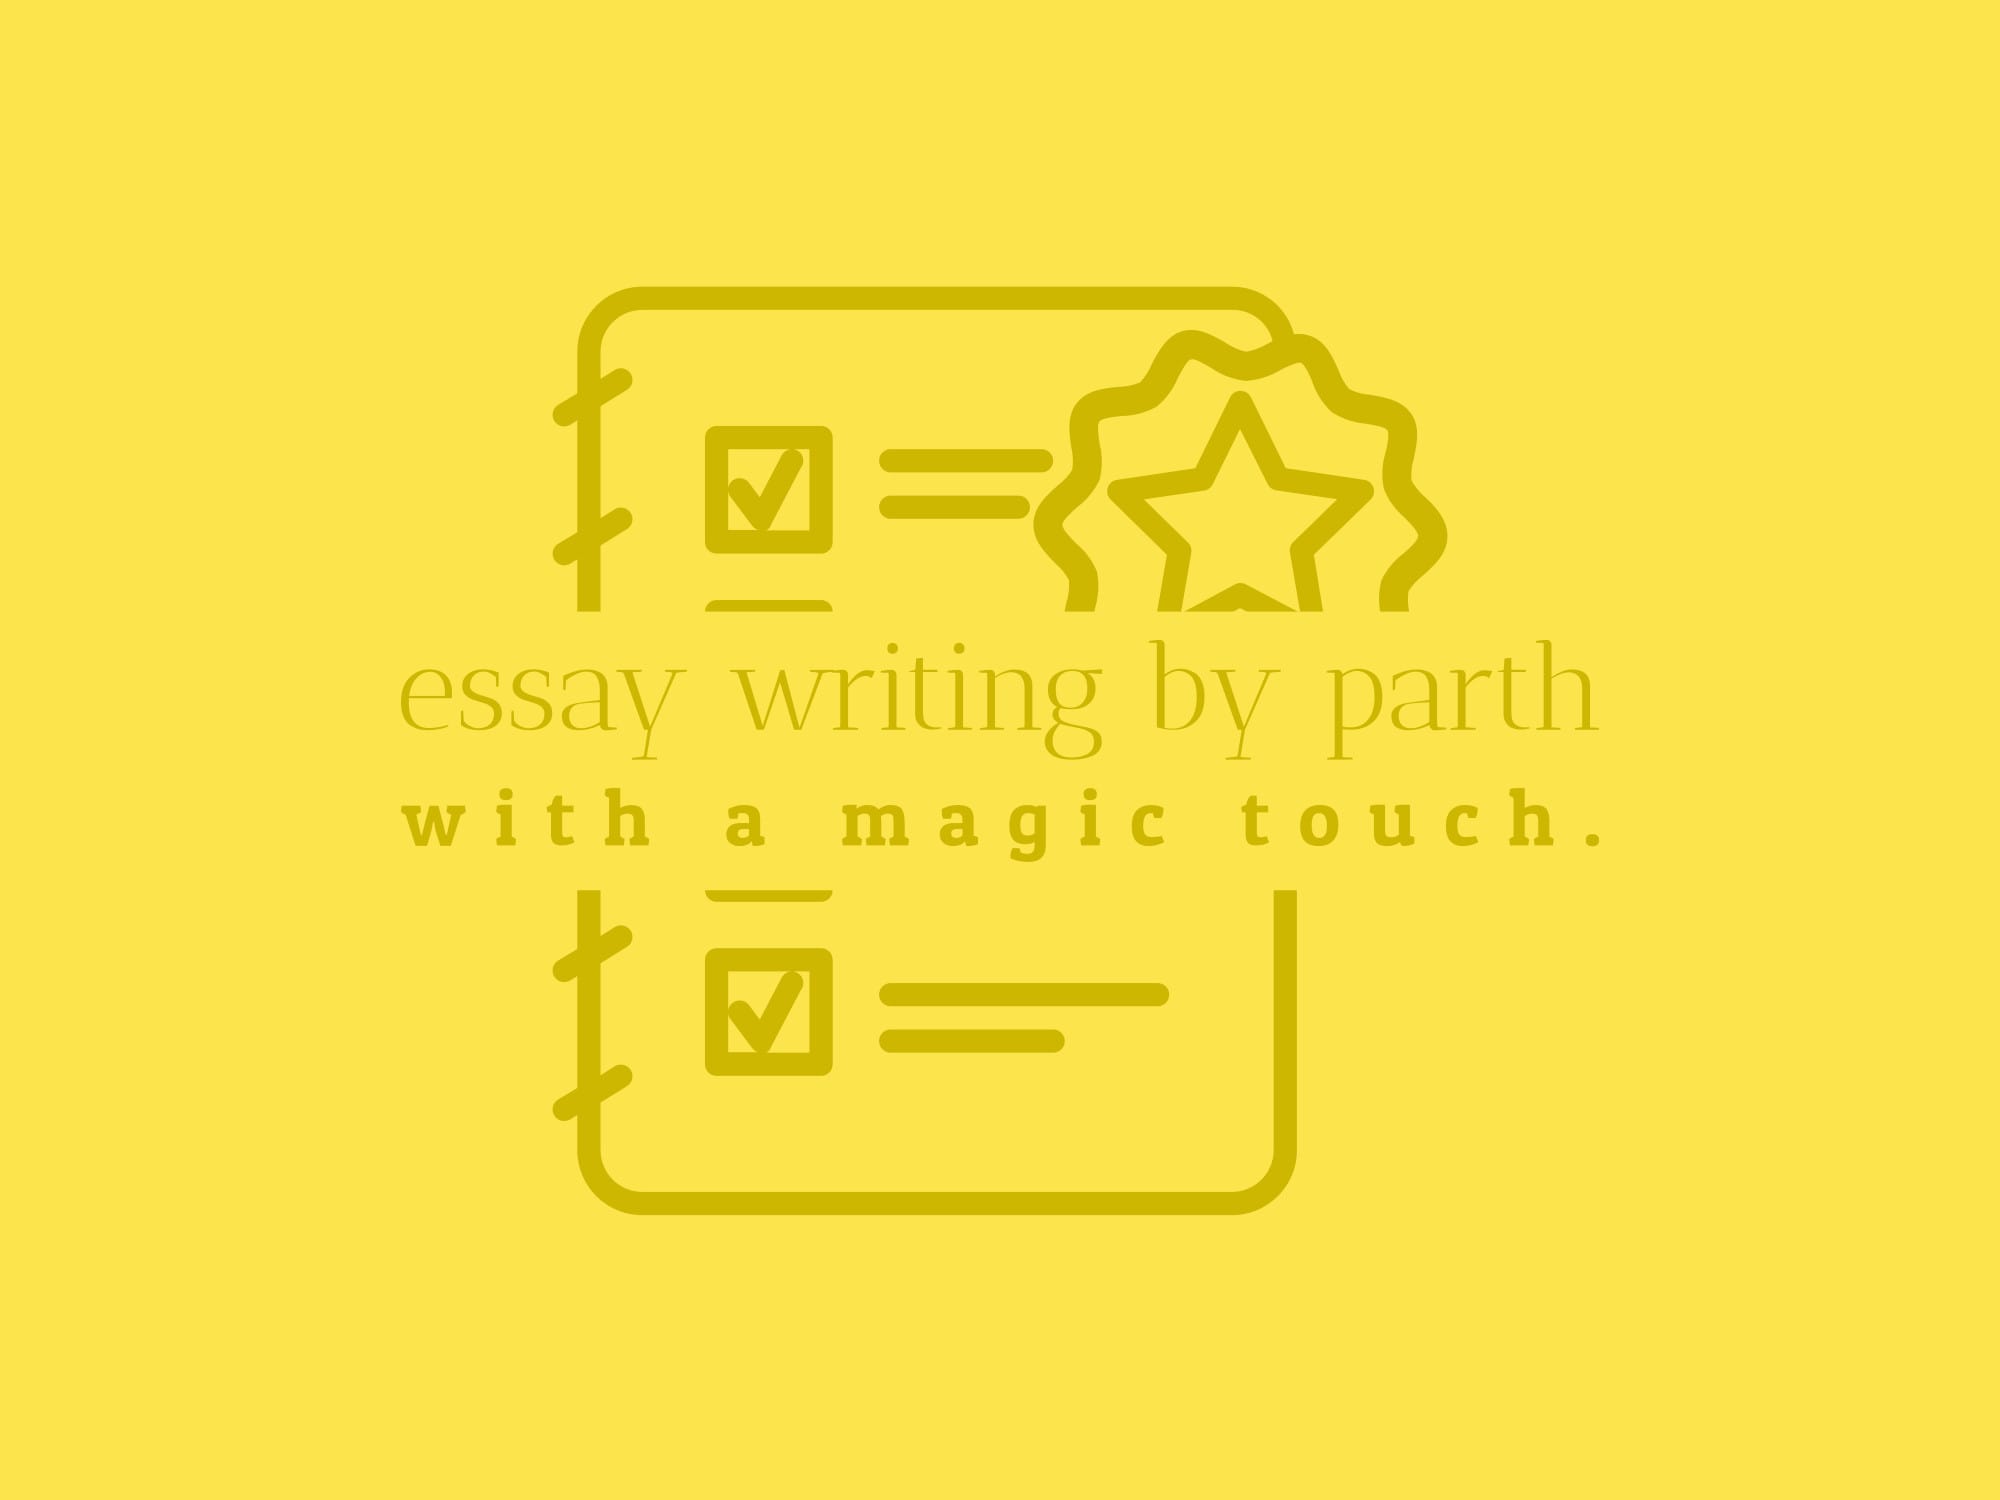 Will free essay writer Ever Die?